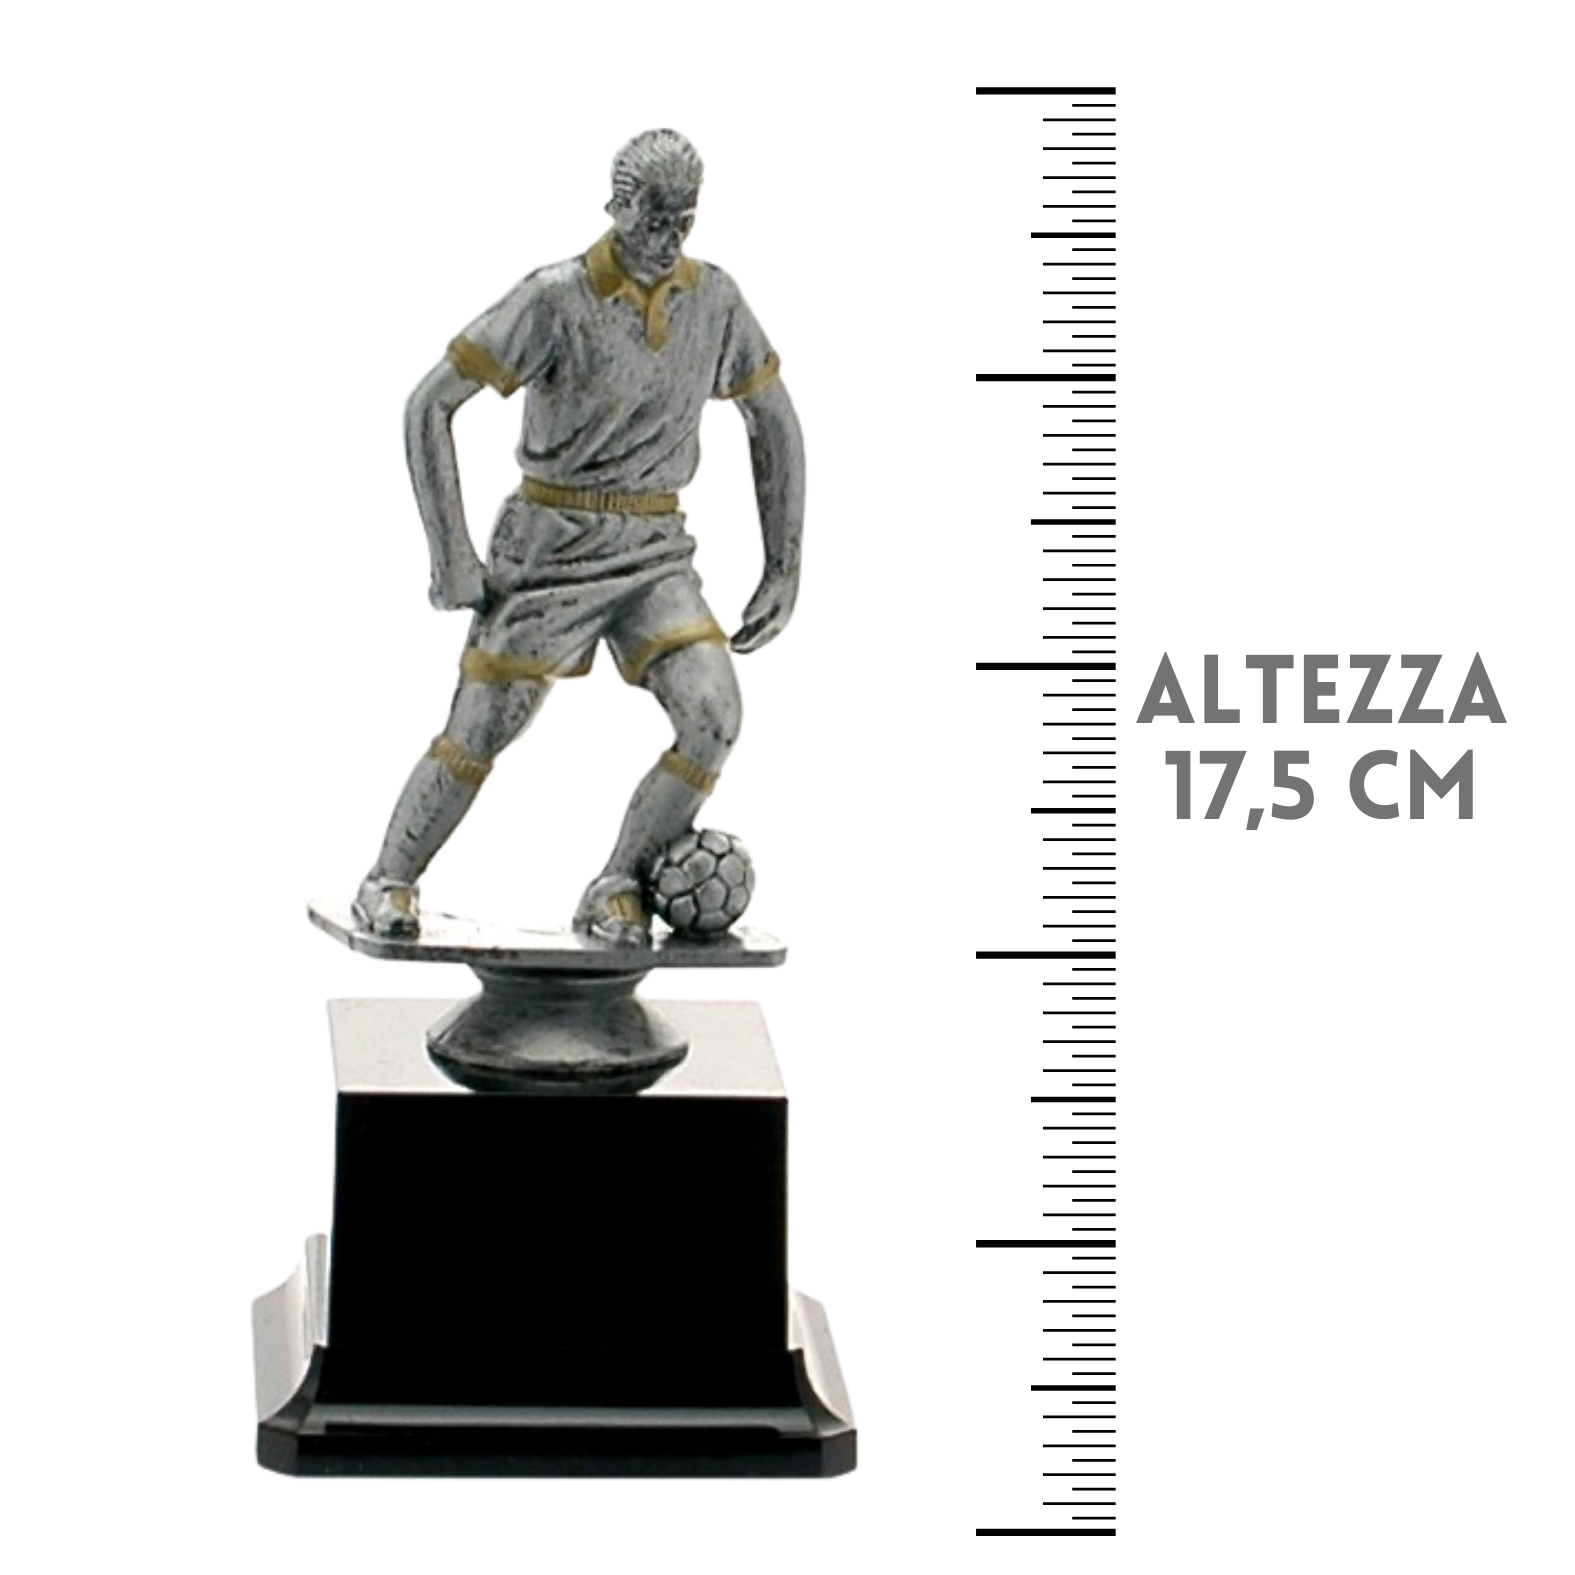 Premiazioni personalizzate premio calcio 14.548